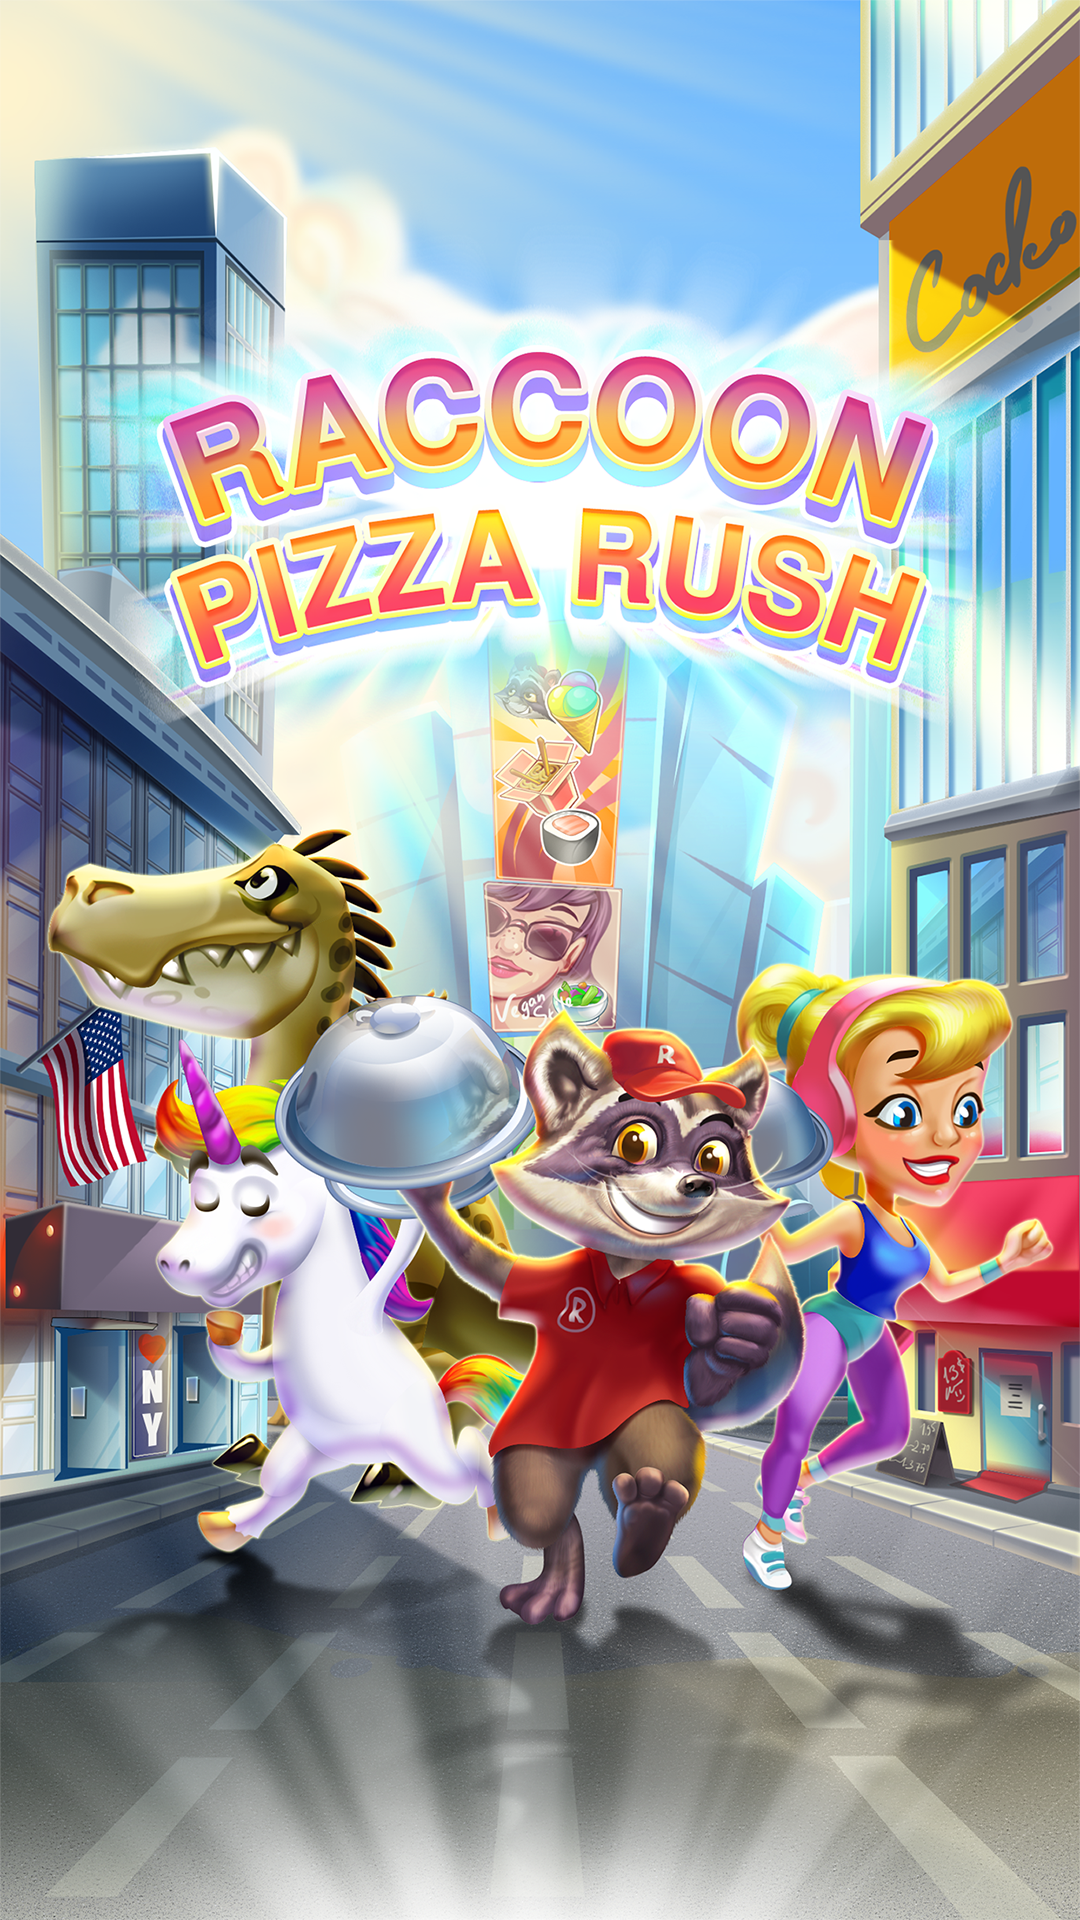 Screenshot 1 of Raccoon Pizza vội vàng 1.0.8